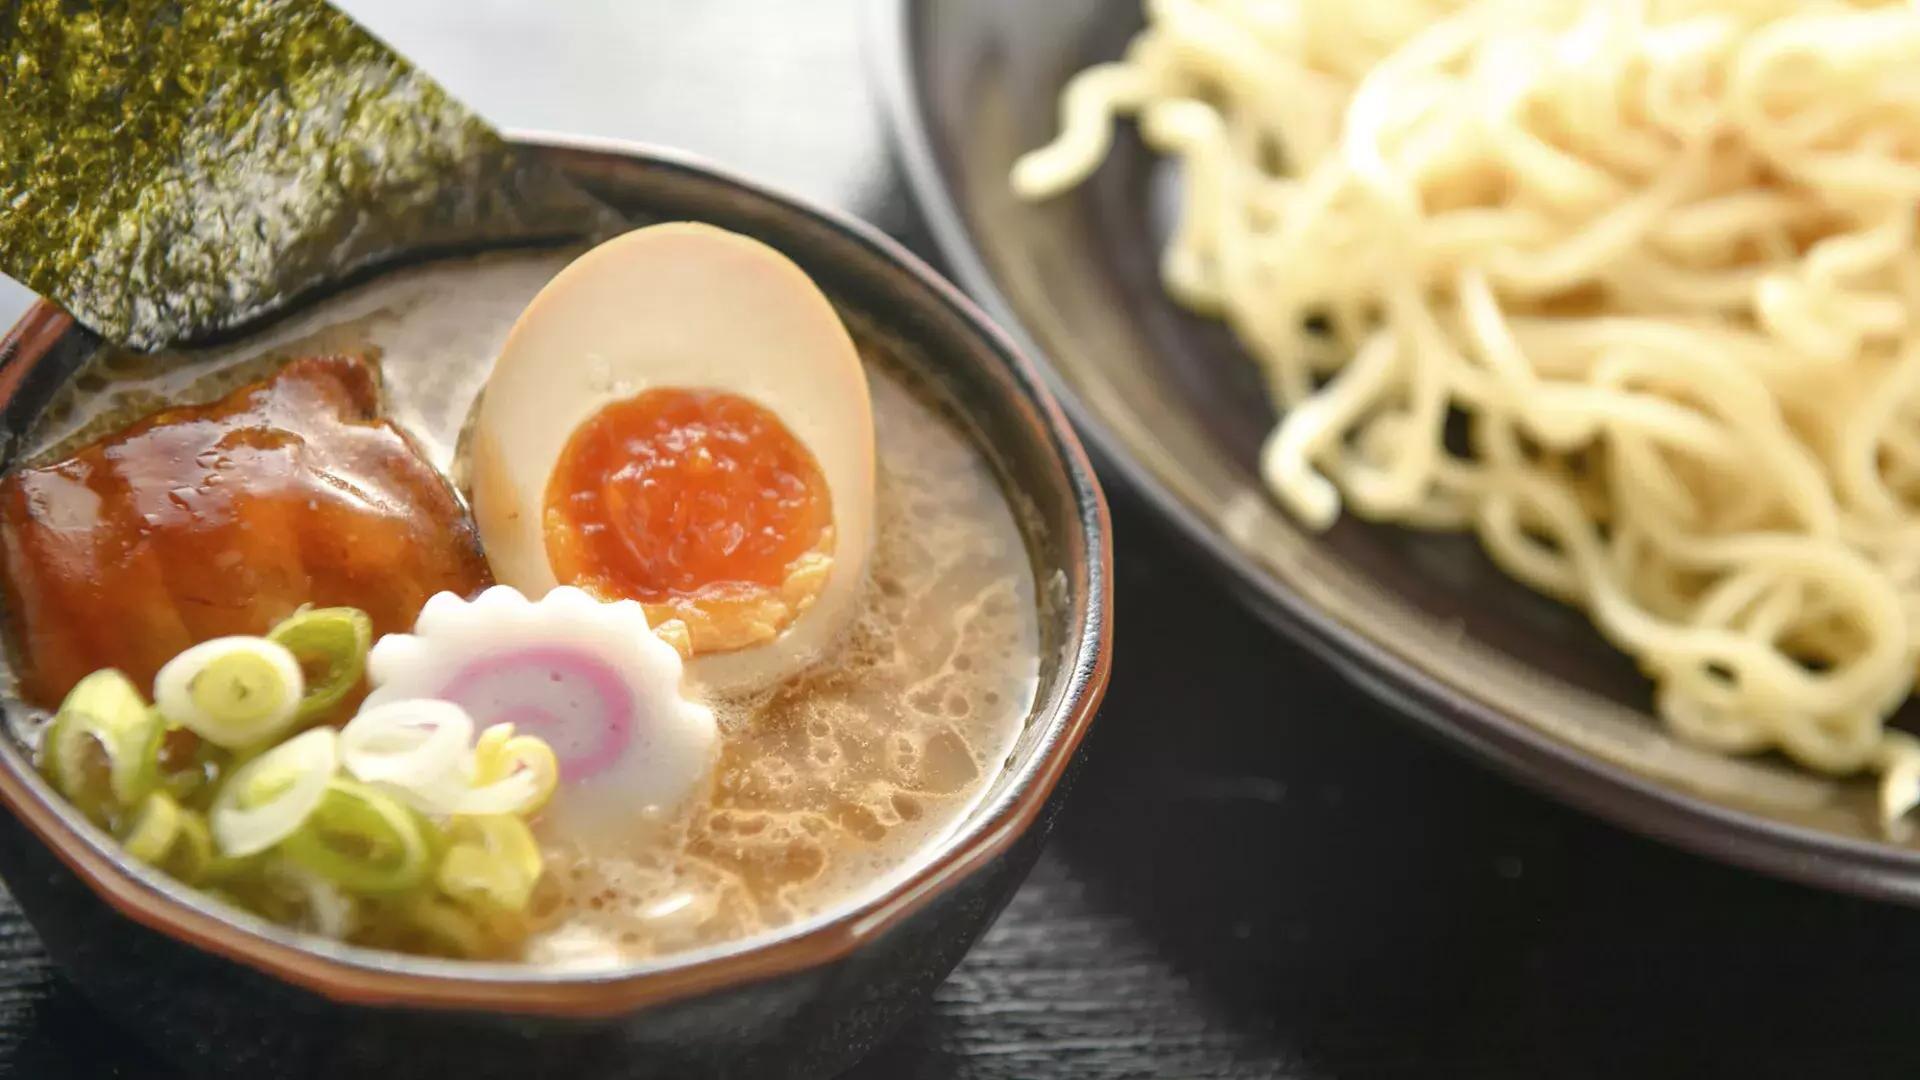 Immagine ravvicinata di una ciotola di noodles e una ciotola di zuppa di ramen con un uovo in camicia, tagliato a metà.